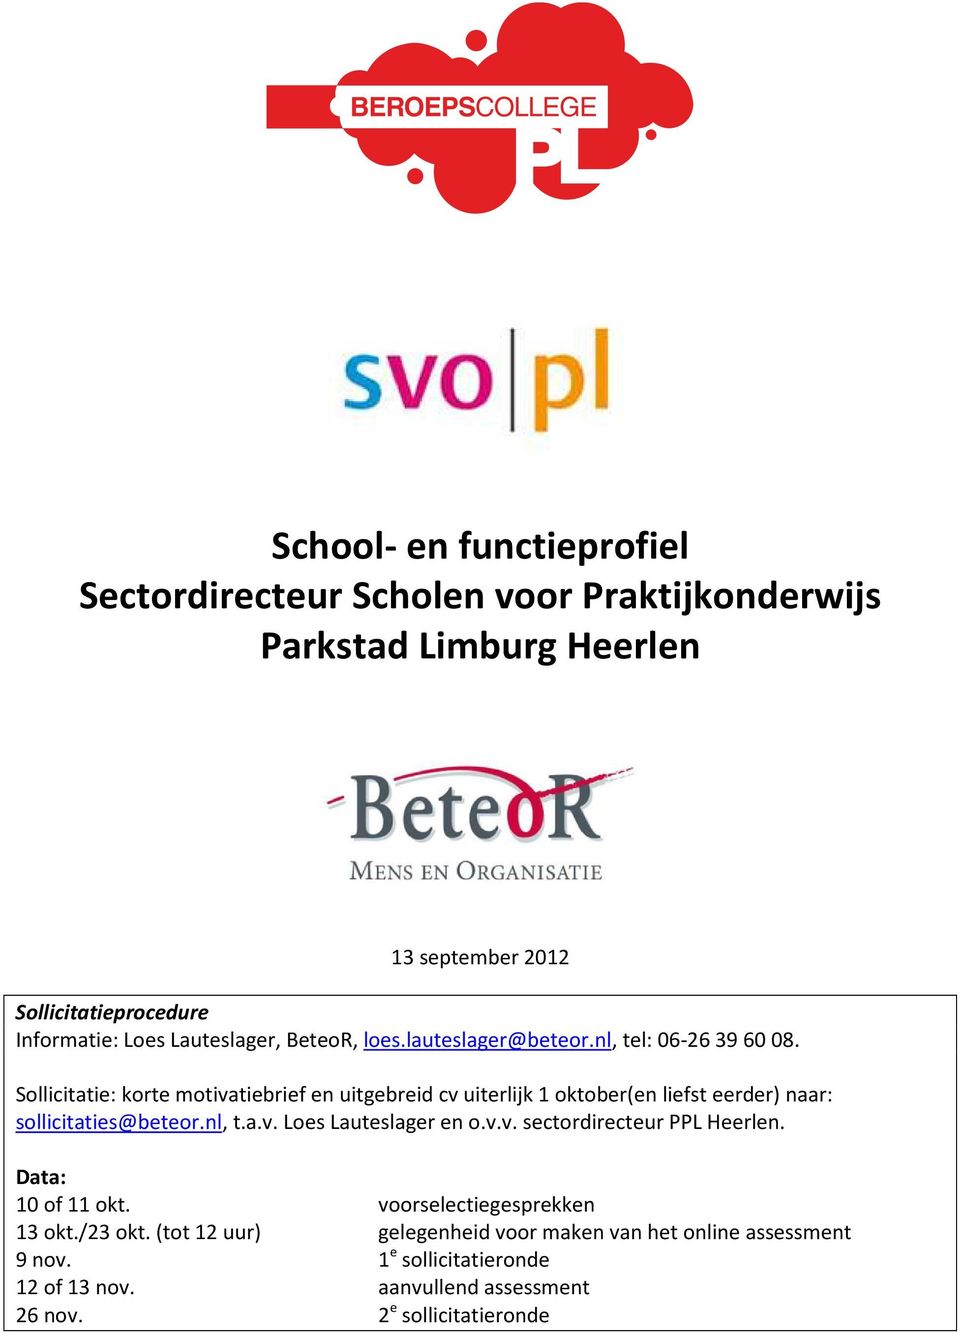 Sollicitatie: korte motivatiebrief en uitgebreid cv uiterlijk 1 oktober(en liefst eerder) naar: sollicitaties@beteor.nl, t.a.v. Loes Lauteslager en o.v.v. sectordirecteur PPL Heerlen.